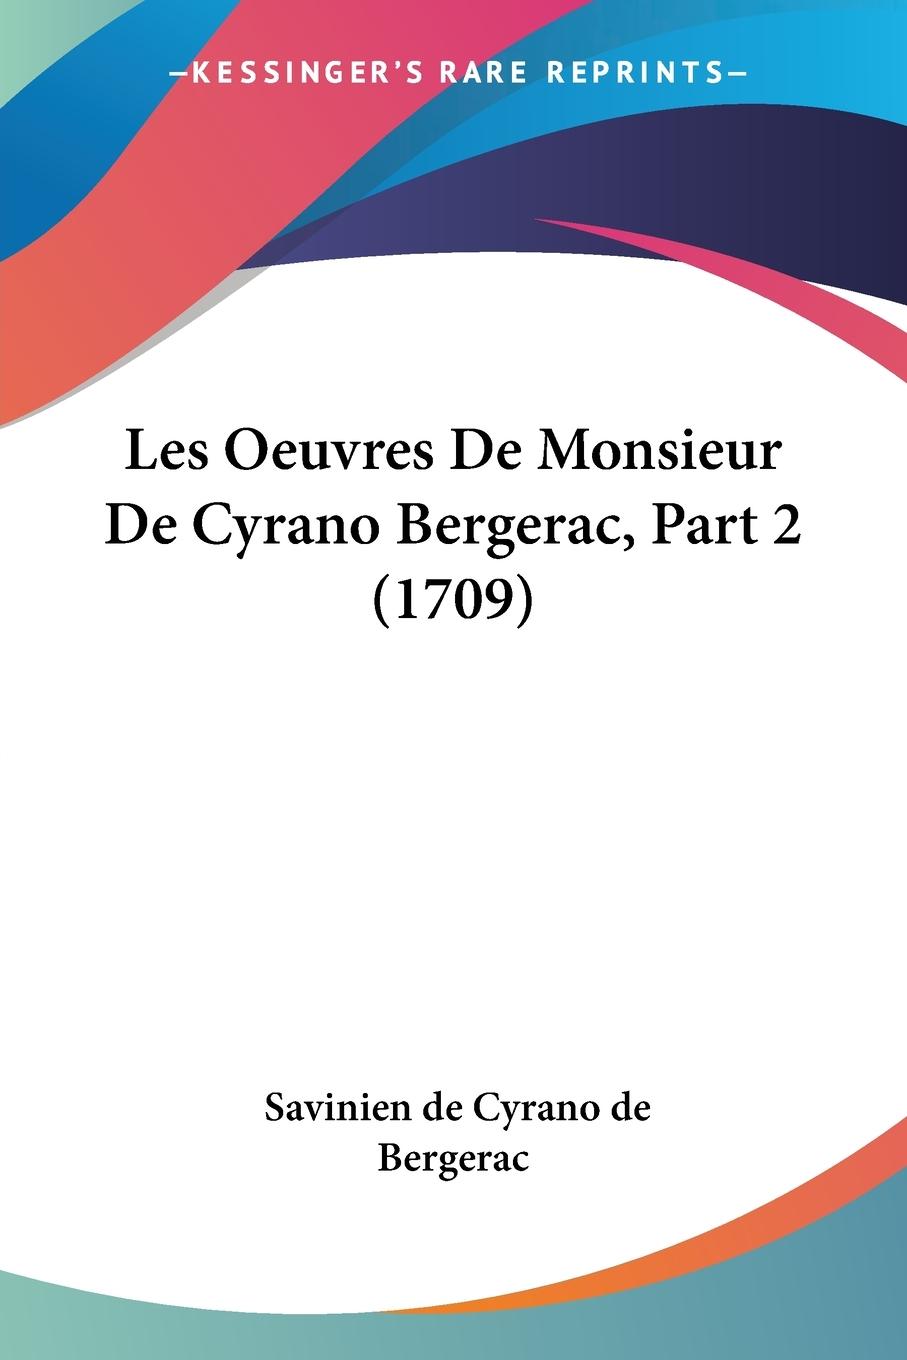 Les Oeuvres De Monsieur De Cyrano Bergerac, Part 2 (1709) - Bergerac, Savinien De Cyrano De